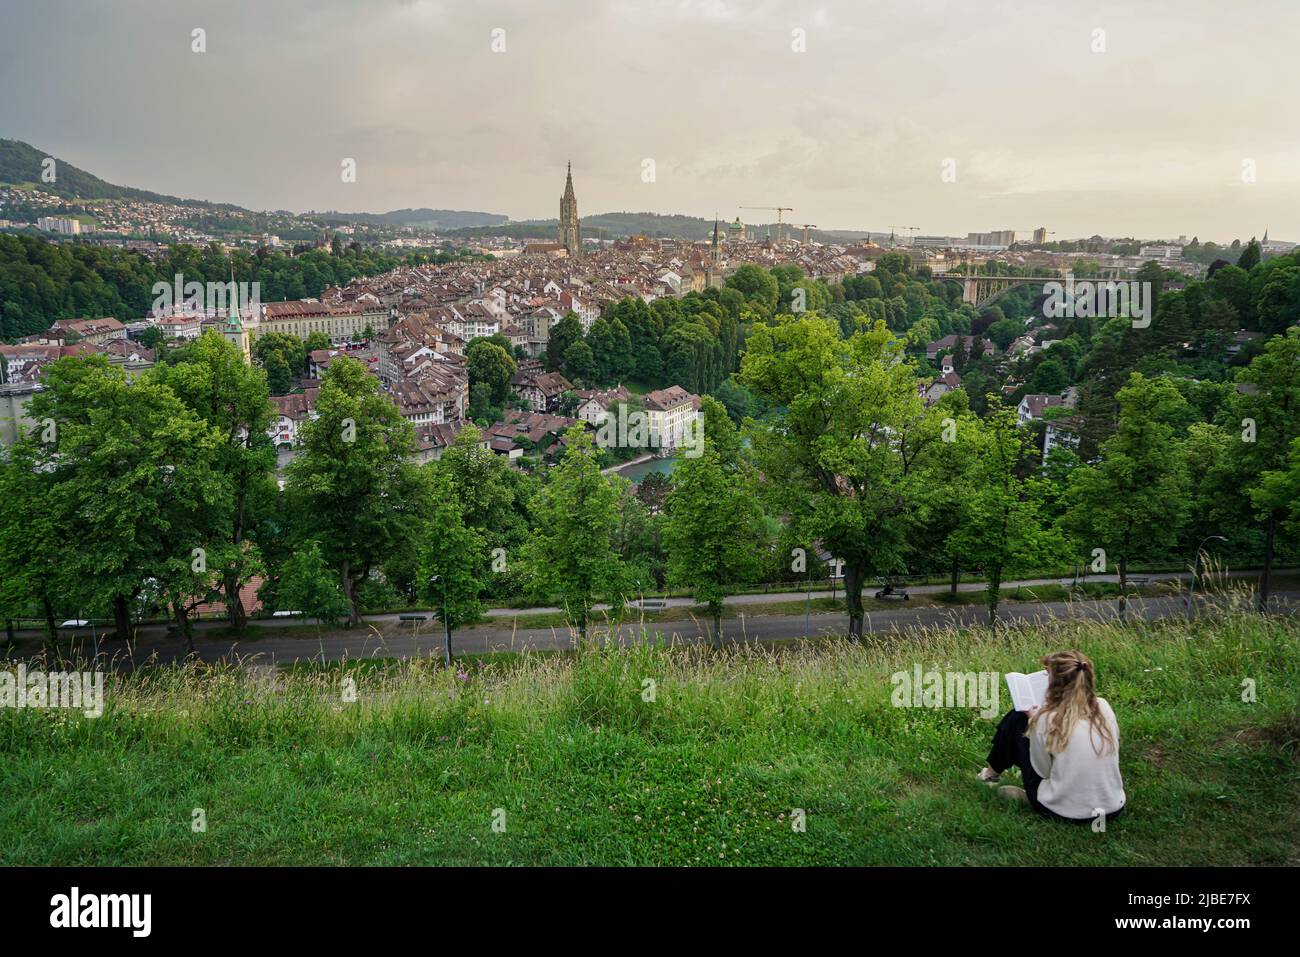 La gente admira la espléndida vista panorámica de la ciudad vieja de Berna desde arriba. Berna, Suiza - Junio 2022 Foto de stock